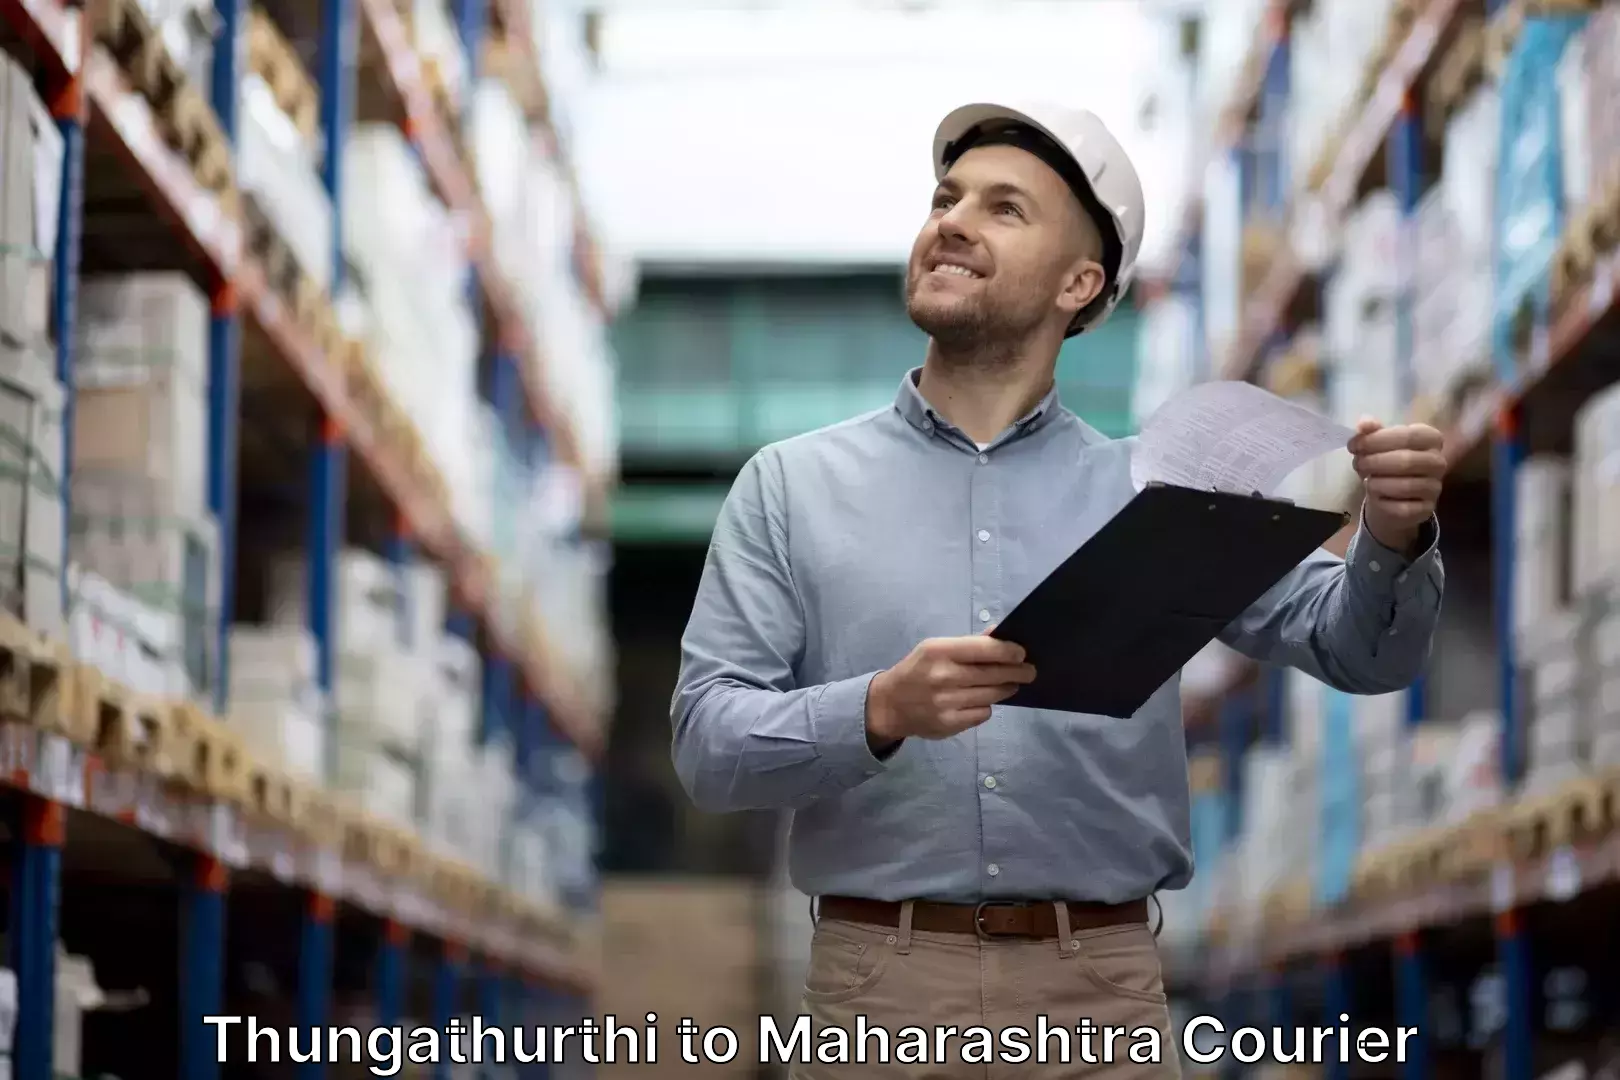 Luggage shipment specialists Thungathurthi to Mumbai Port